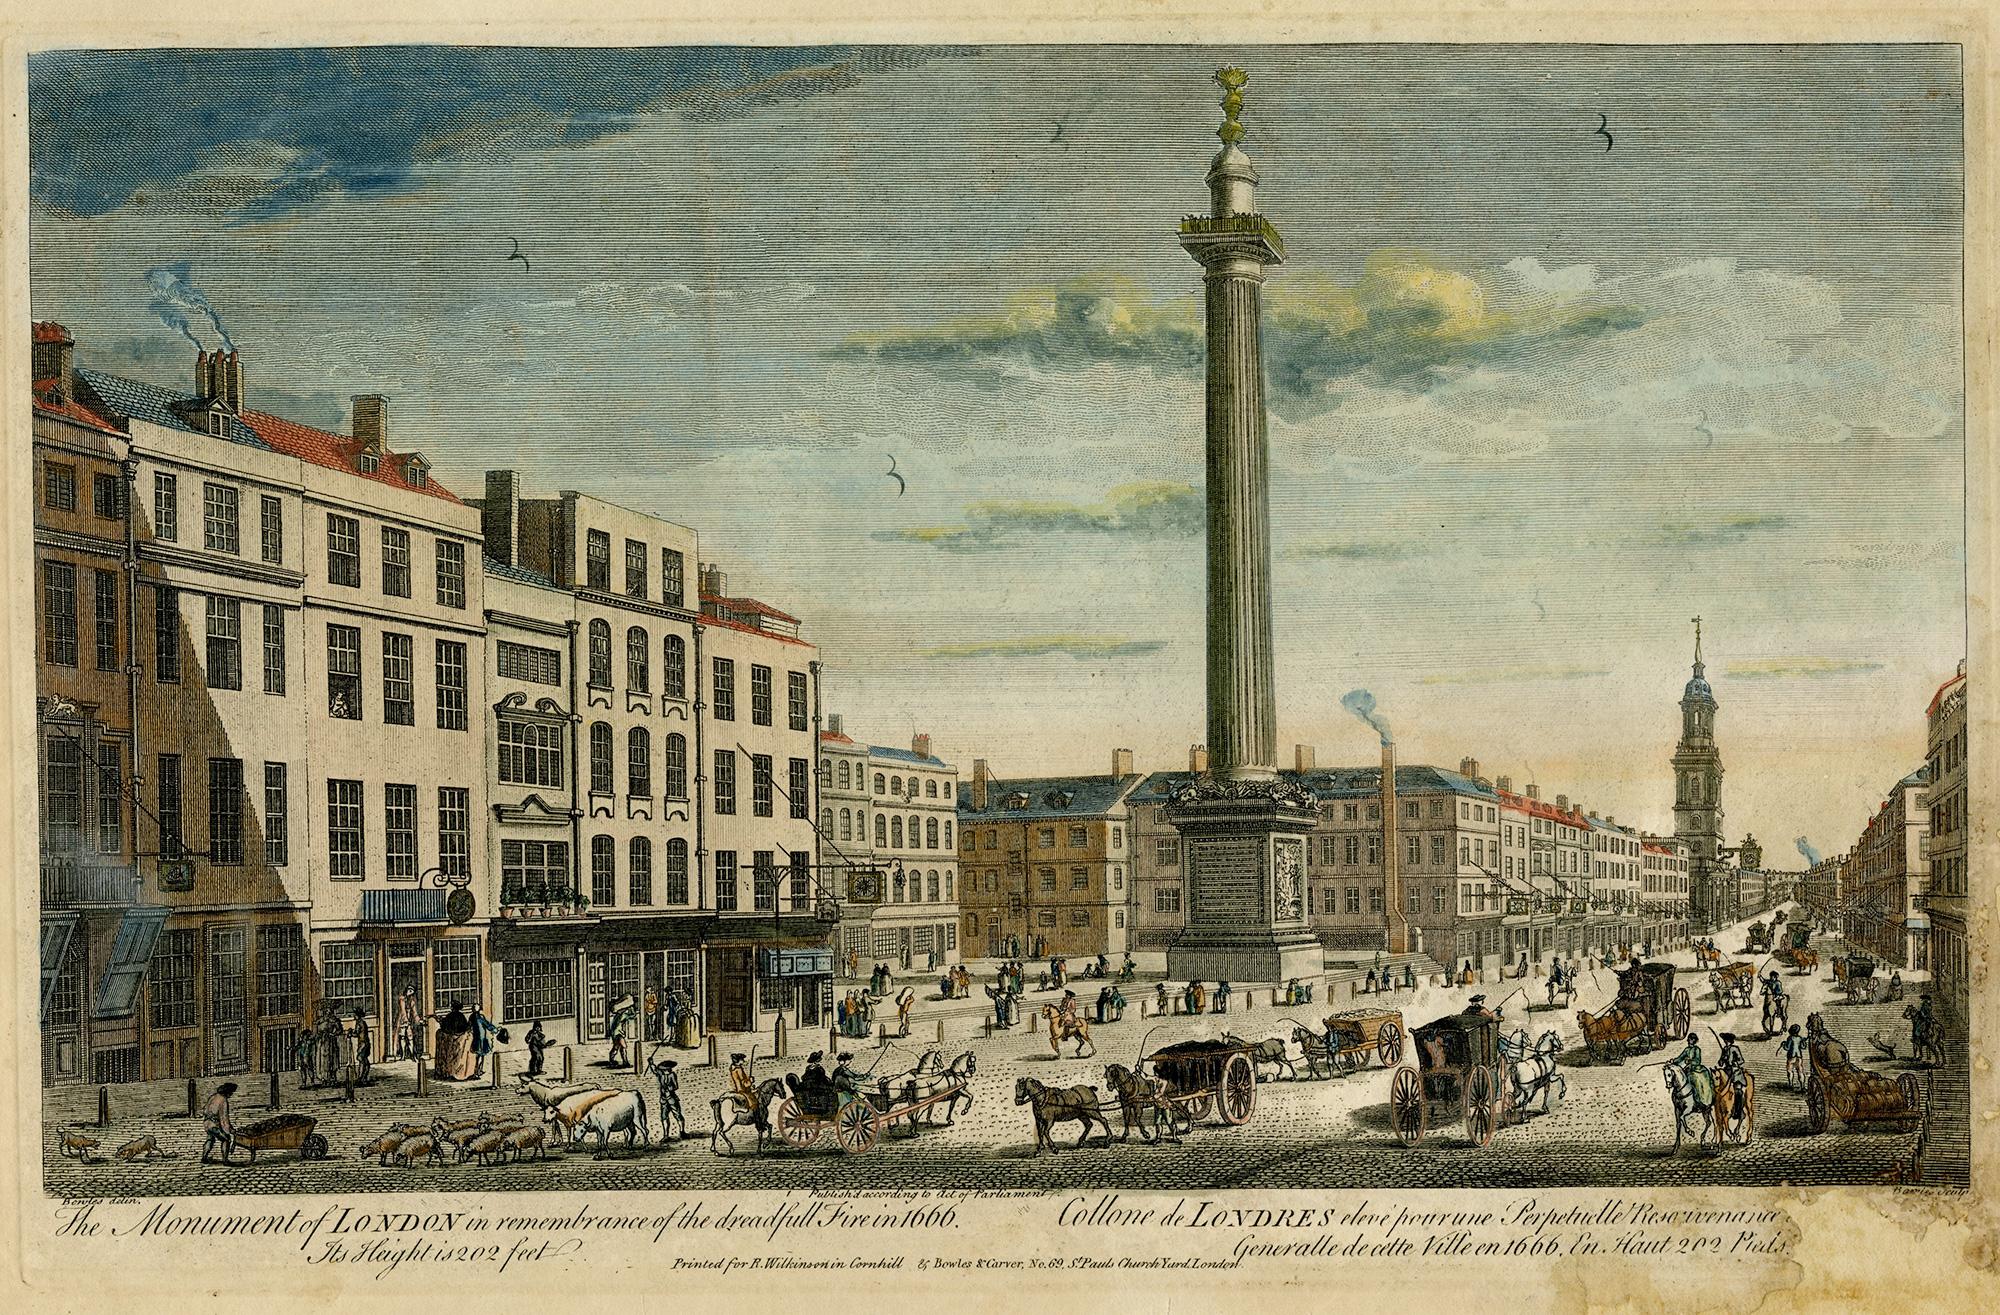 Landscape Print Thomas Bowles III - Le monument de Londres en hommage au redoutable incendie de 1666